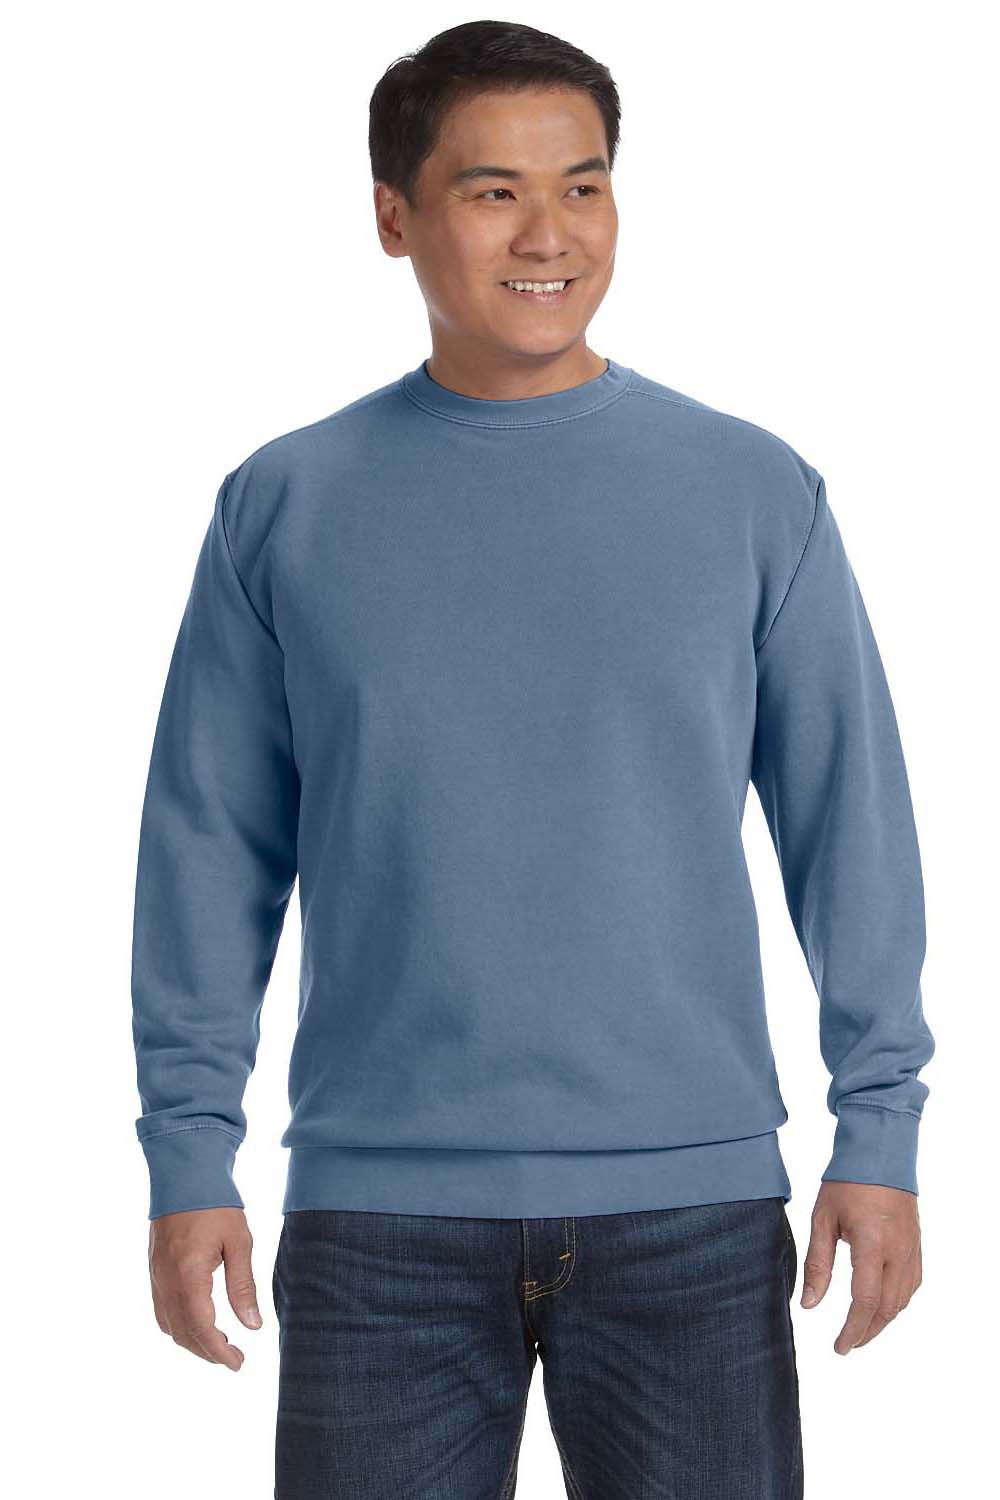 Comfort Colors 1566 Mens Blue Jean Crewneck Sweatshirt ...